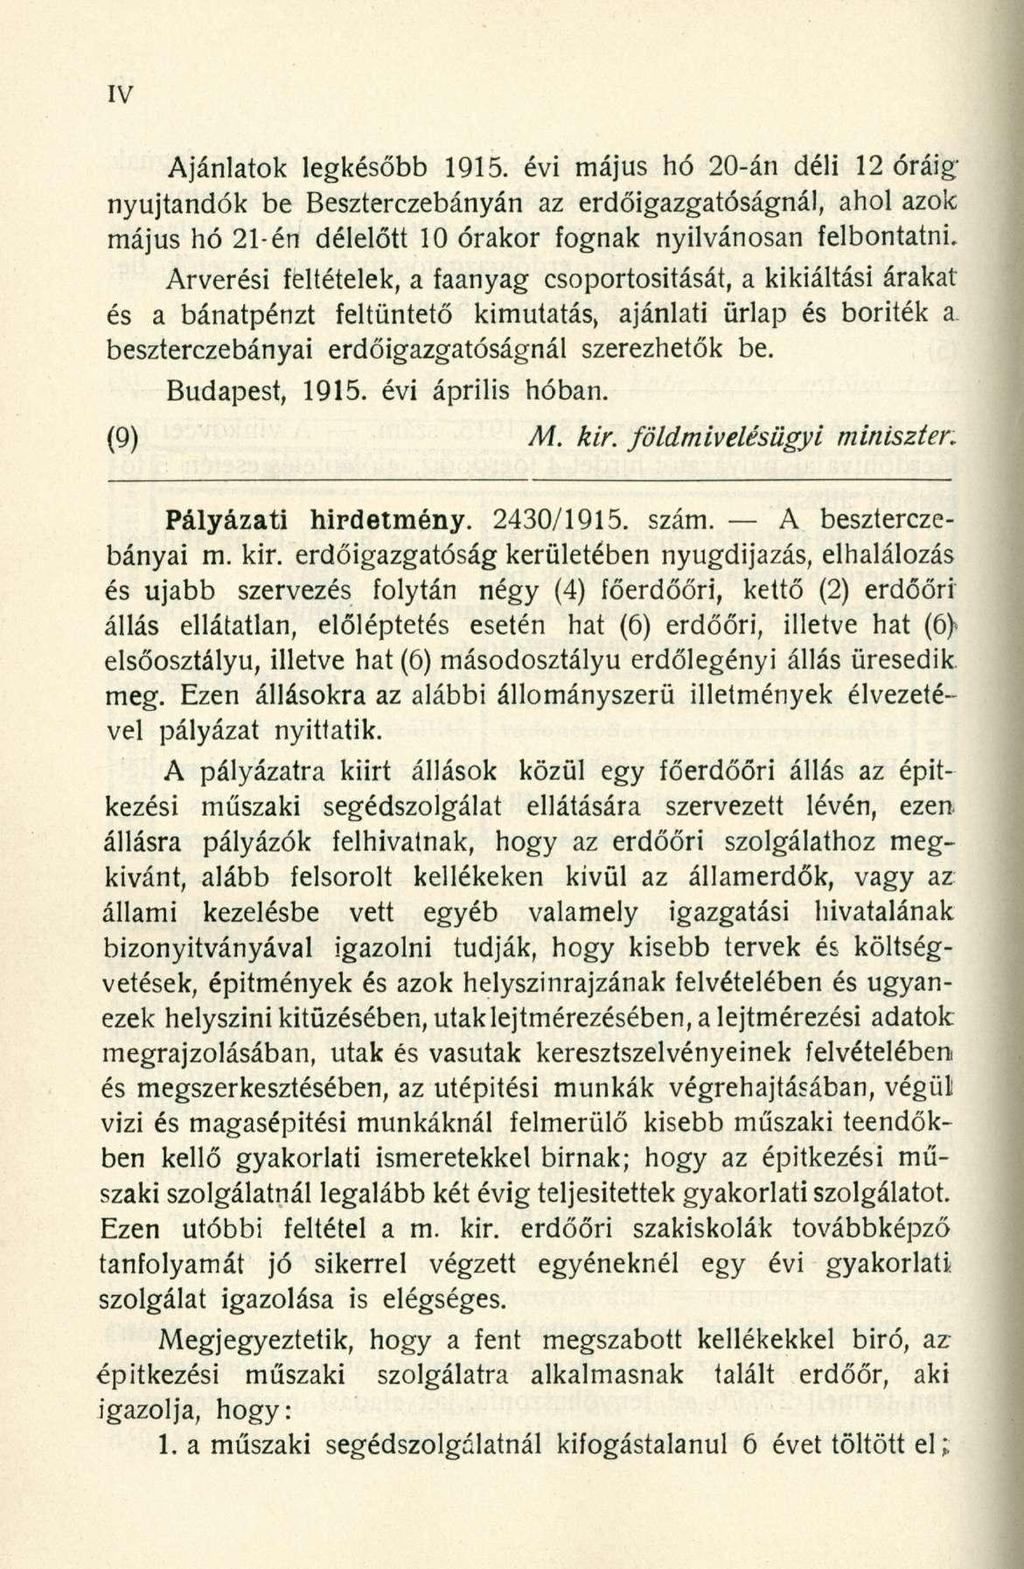 Ajánlatok legkésőbb 1915. évi május hó 20-án déli 12 óráig nyújtandók be Beszterczebányán az erdőigazgatóságnál, ahol azok május hó 21-én délelőtt 10 órakor fognak nyilvánosan felbontatni.